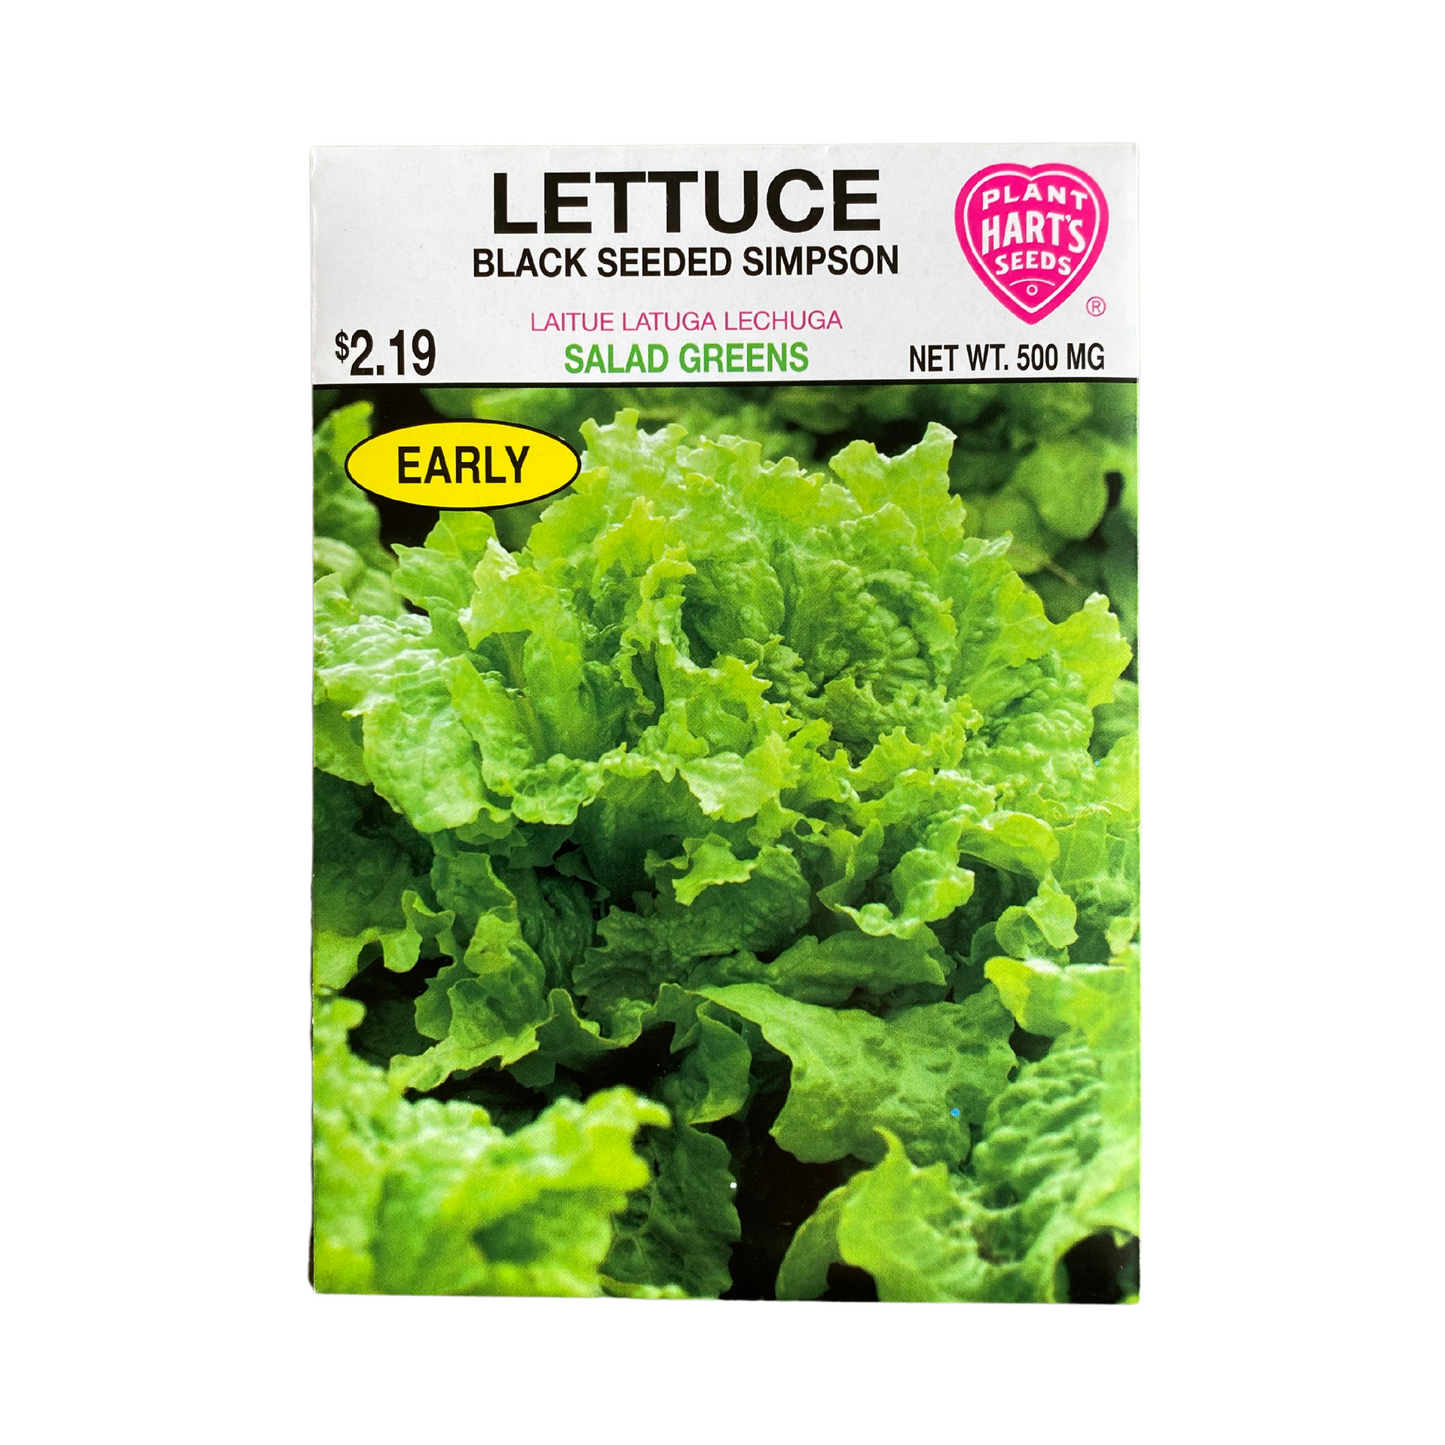 Lettuce Black Seeded Simpson